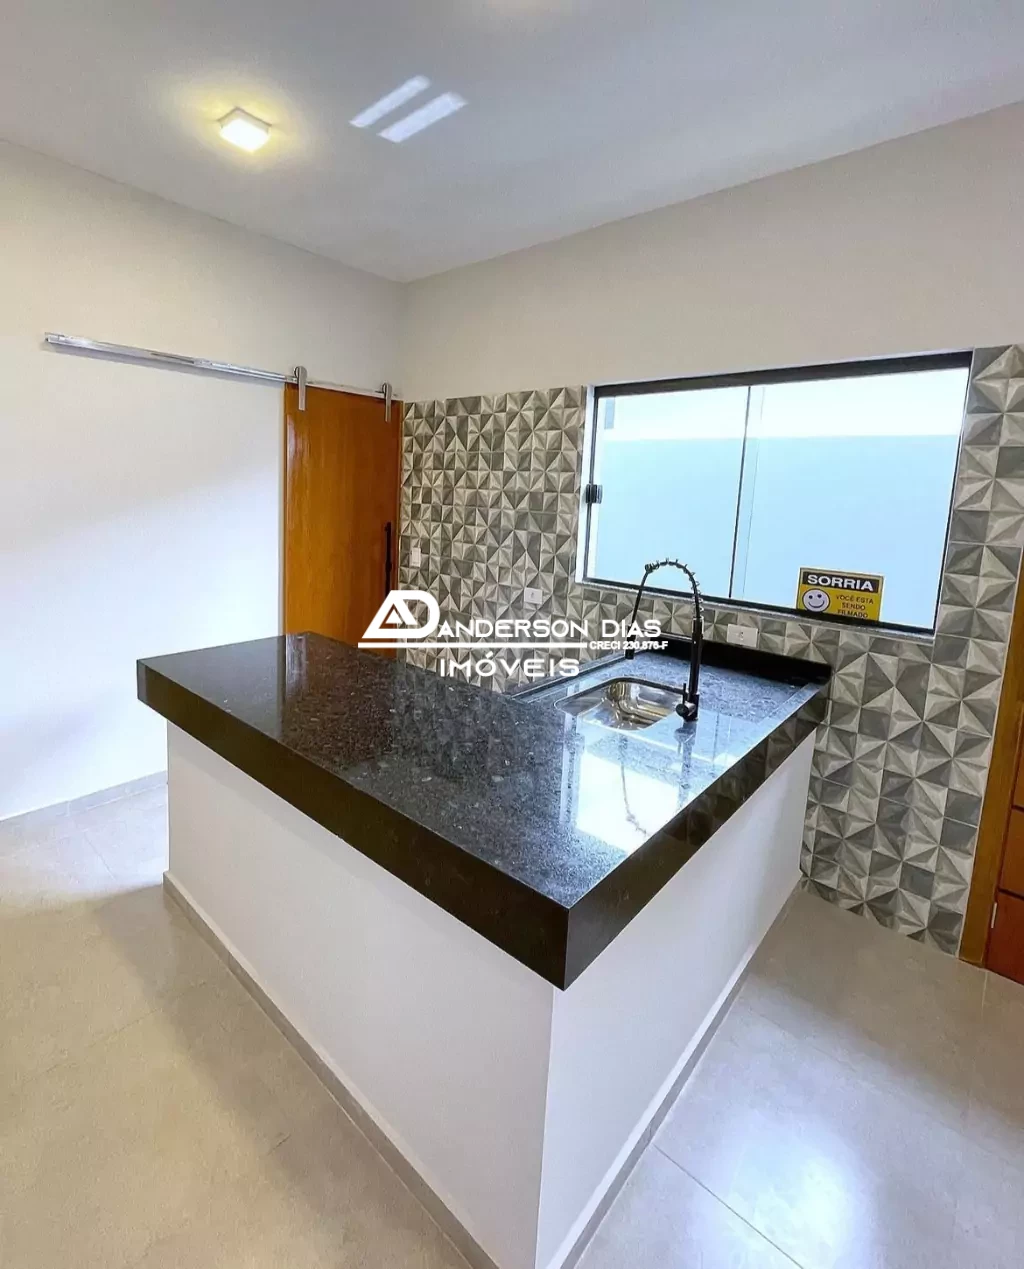 Casa nova com 2 dormitórios, 1 Suite com 73m² à venda por R$370.000,00 - Balneário dos Golfinhos - Caraguatatuba/SP